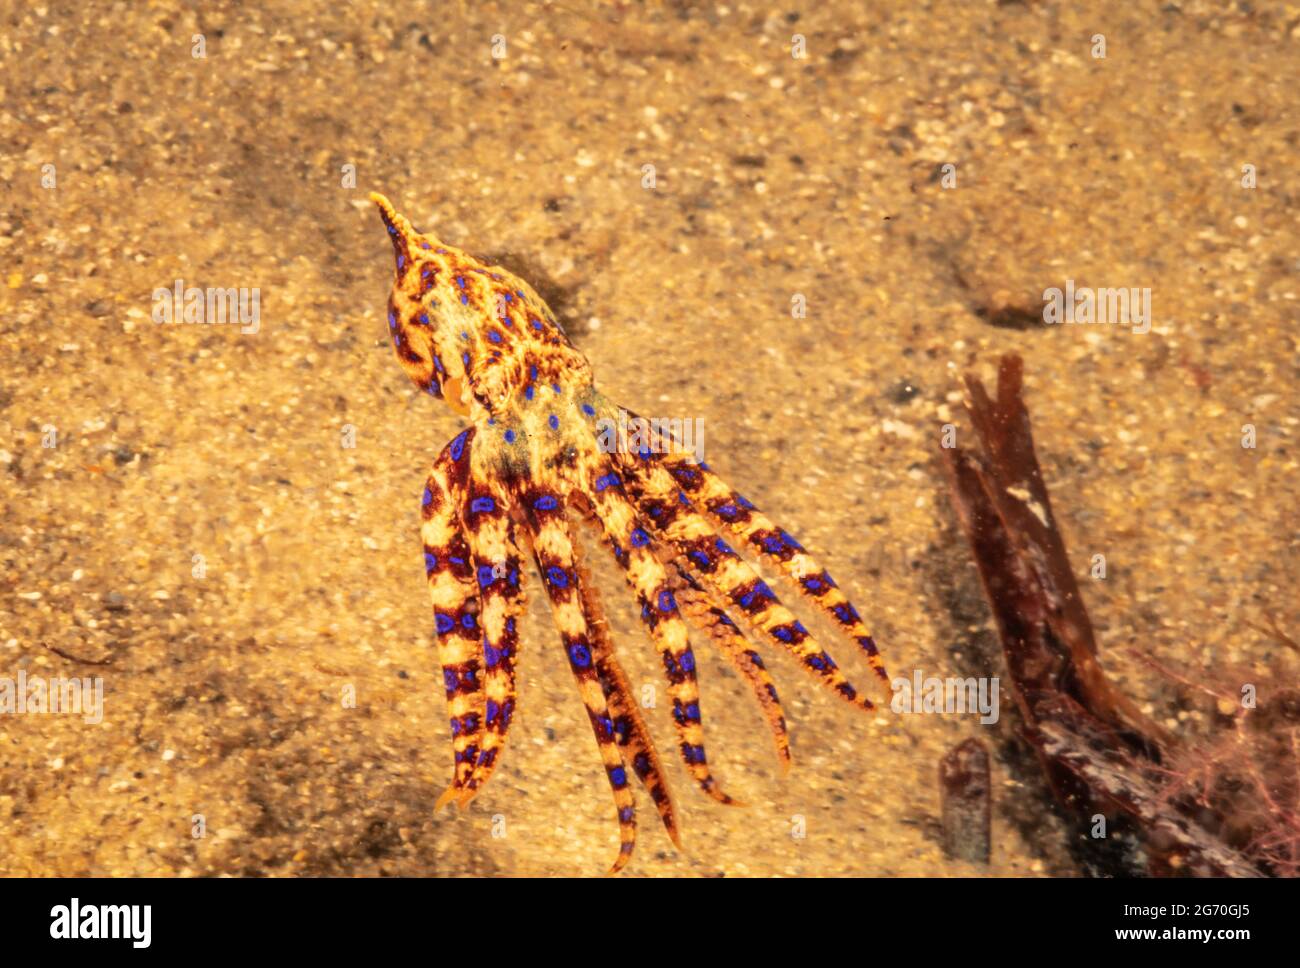 L'Octopus de l'anneau bleu du Sud, Hapalochlaena maculosa, est le plus venimeux de tous les poulpes et a une durée de vie d'environ 1 1/2 ans. Australie méridionale Banque D'Images